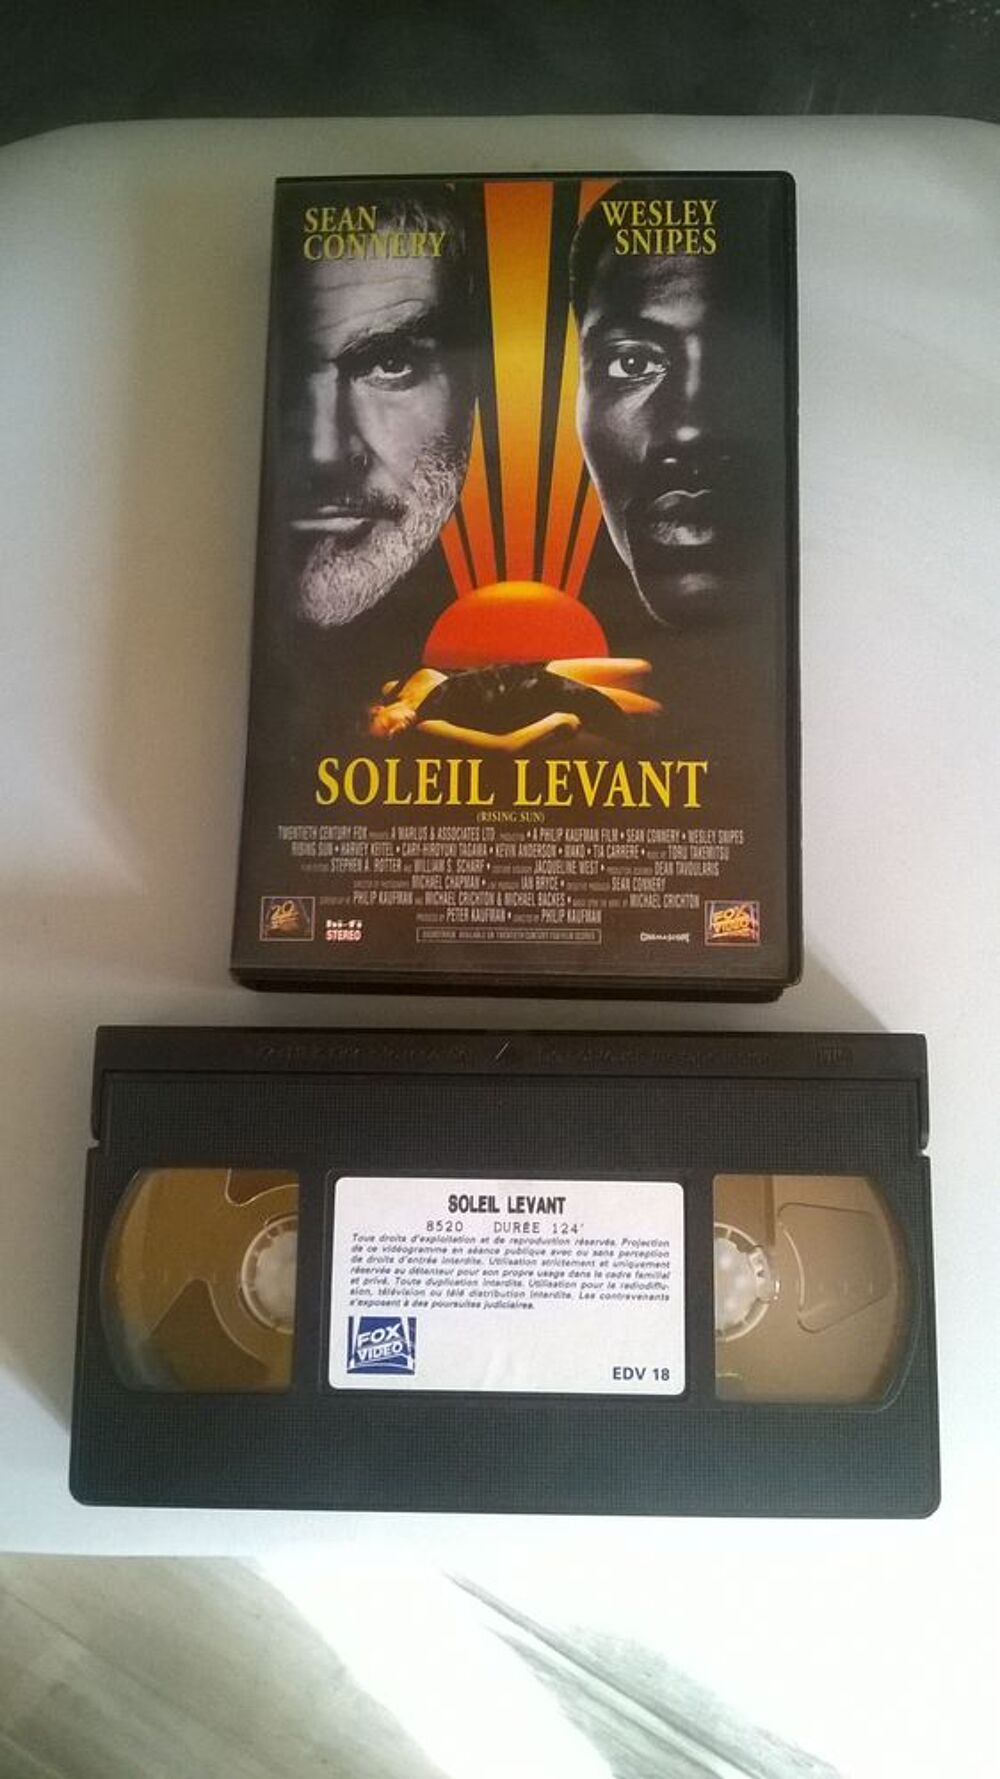 Cassette VHS 
Soleil Levant
1993
Avec Sean Connery et Wes DVD et blu-ray